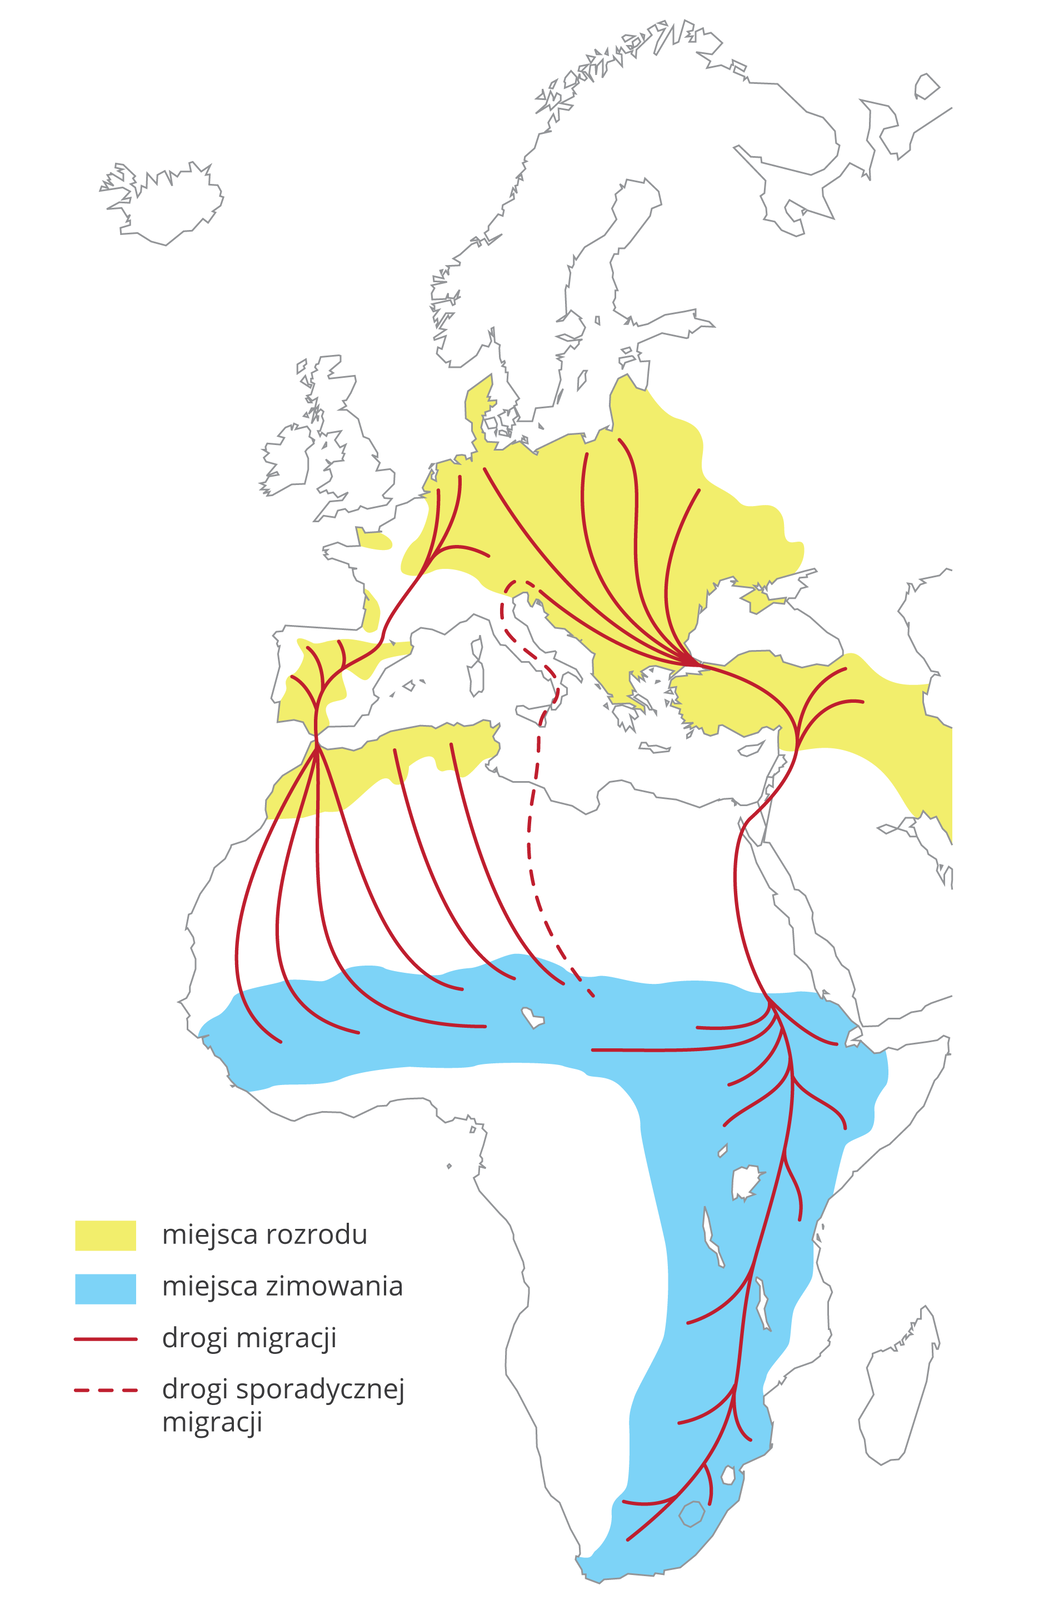 Ilustracja przedstawia wycinek mapy świata z częścią Europy i Afryką. Żółtym kolorem oznaczono na niej miejsca rozrodu bocianów białych. Niebieski kolor oznacza miejsca ich zimowania. Czerwone linie wskazują drogi migracji. Czerwona linia przerywana oznacza drogę sporadycznej migracji.